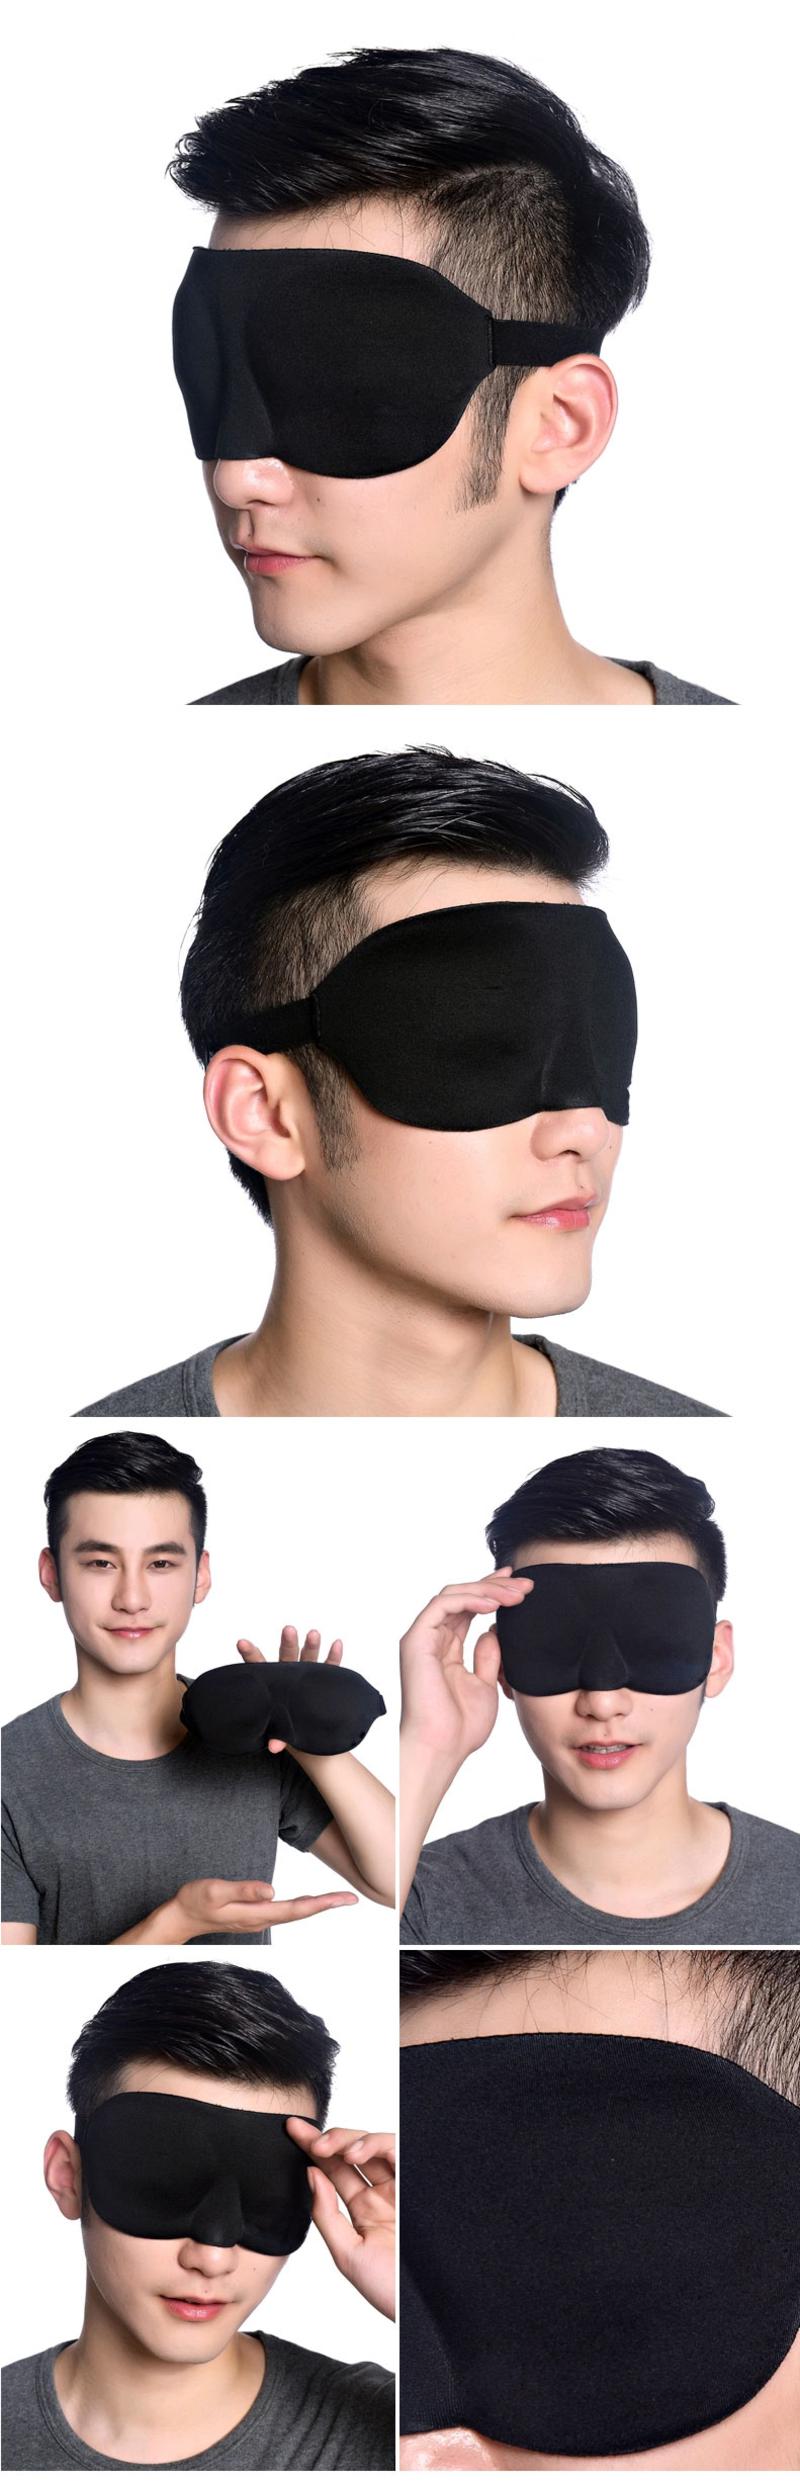 清悦3D立体护眼罩 遮光眼罩睡眠眼罩男女睡觉用 包邮